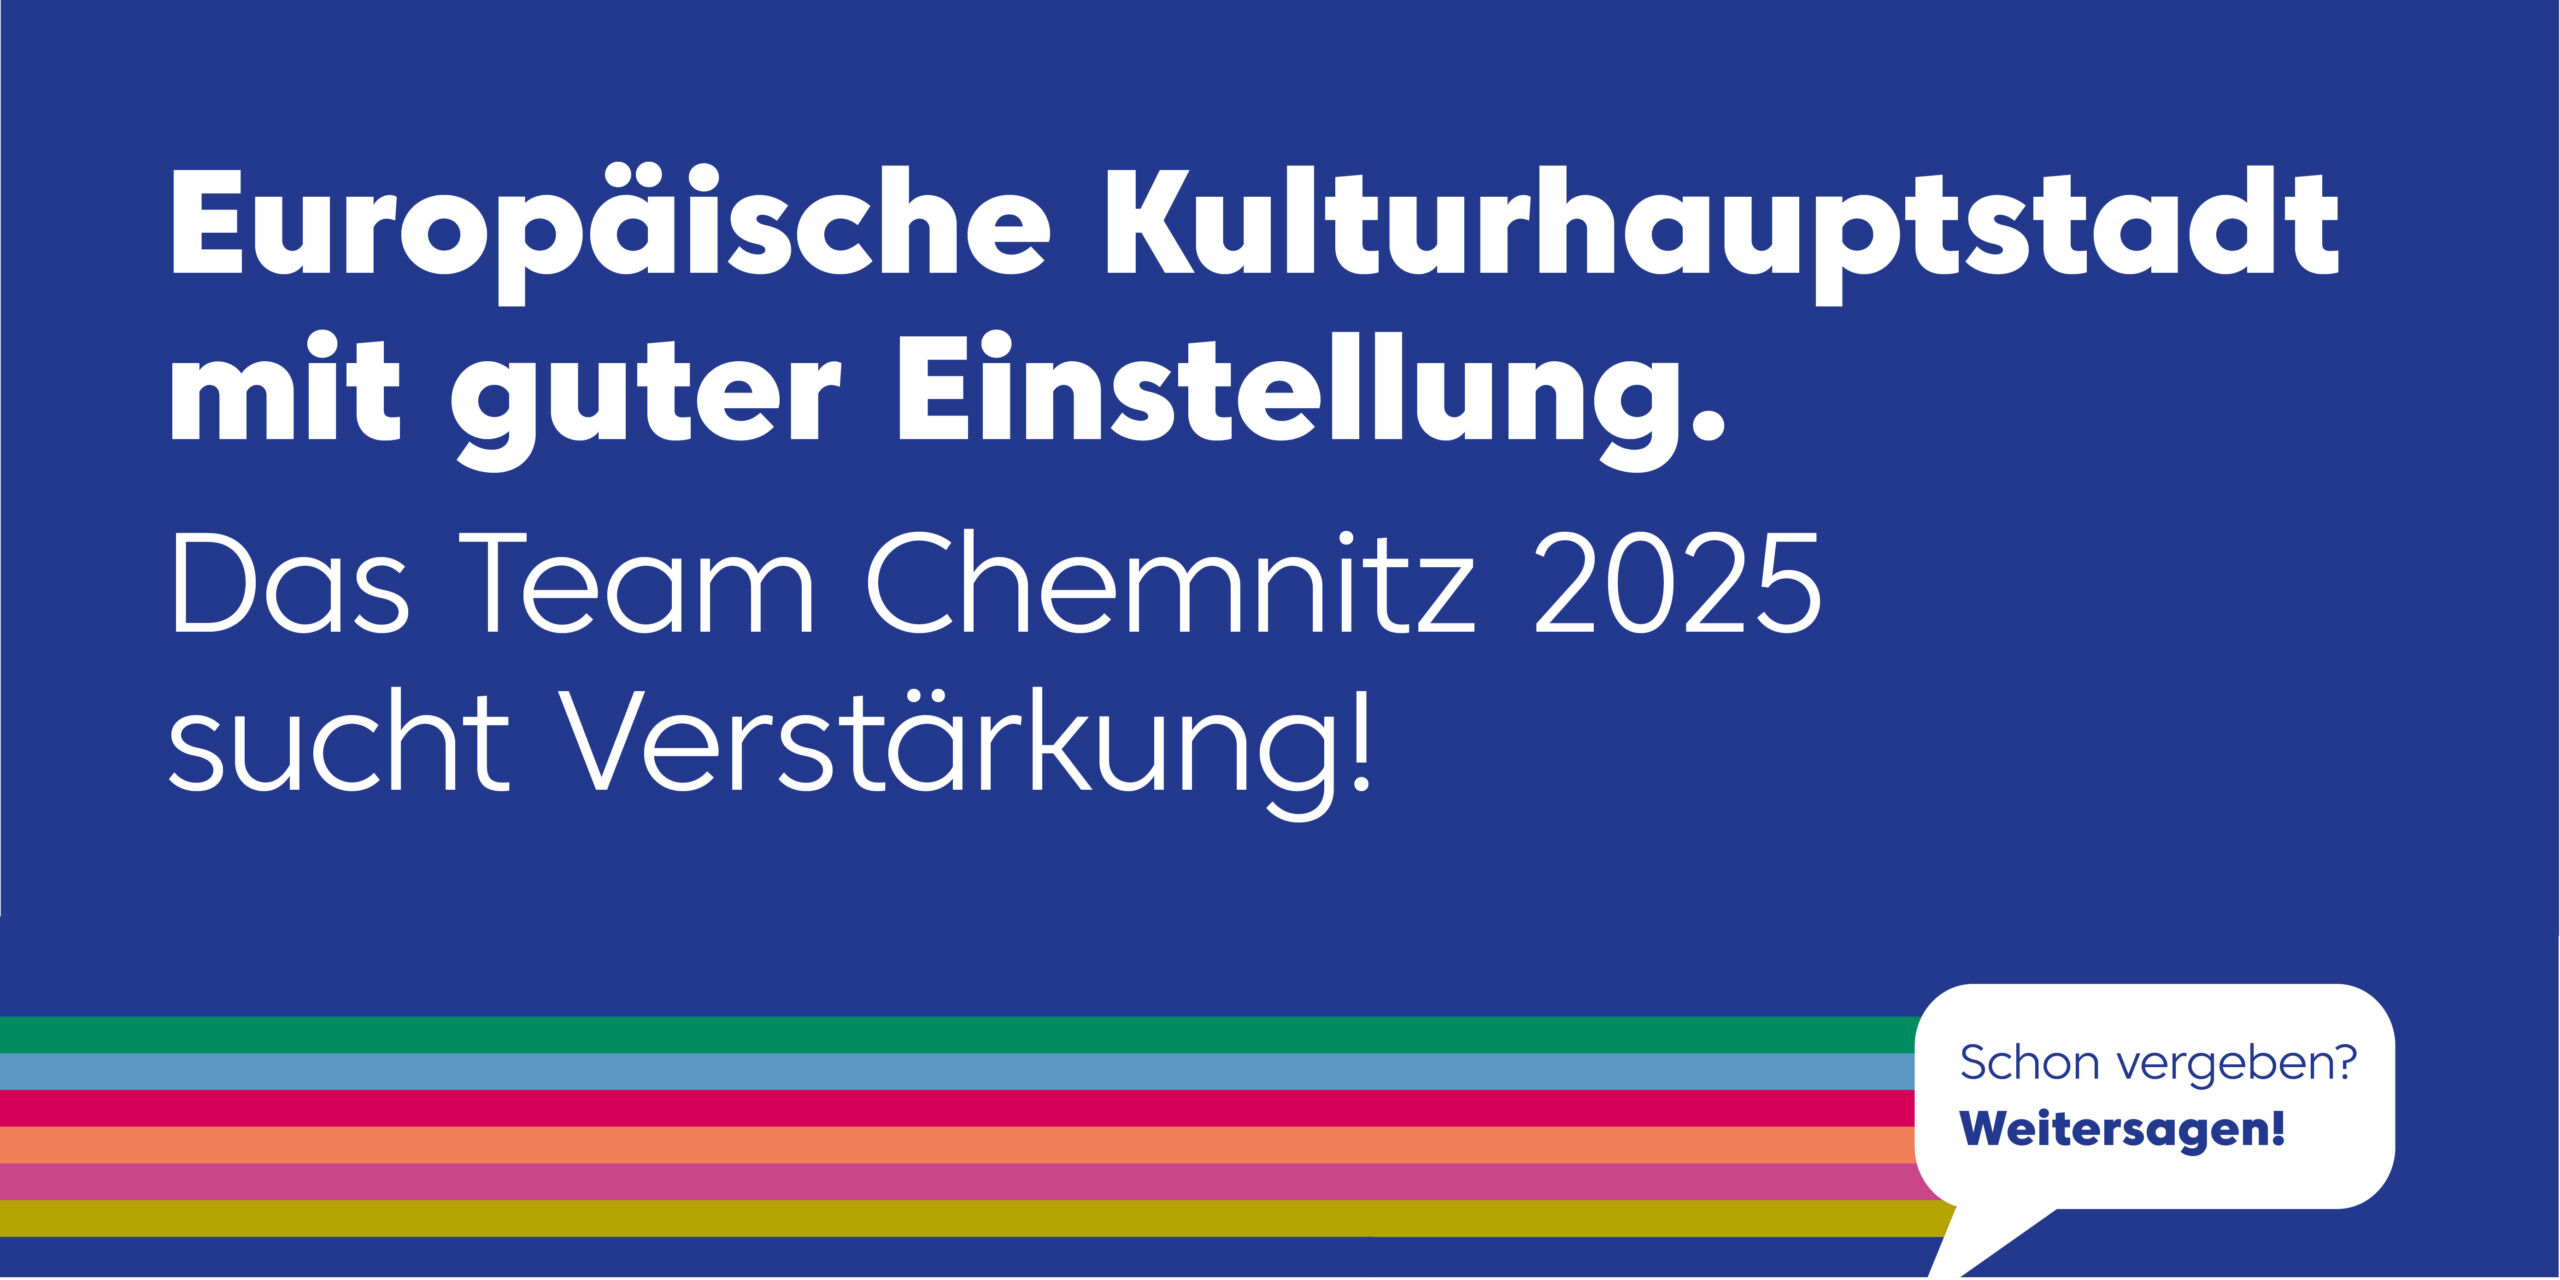 Europäische Kulturhauptstadt mit guter Einstellung. Das Team Chemnitz 2025 sucht Verstärkung!